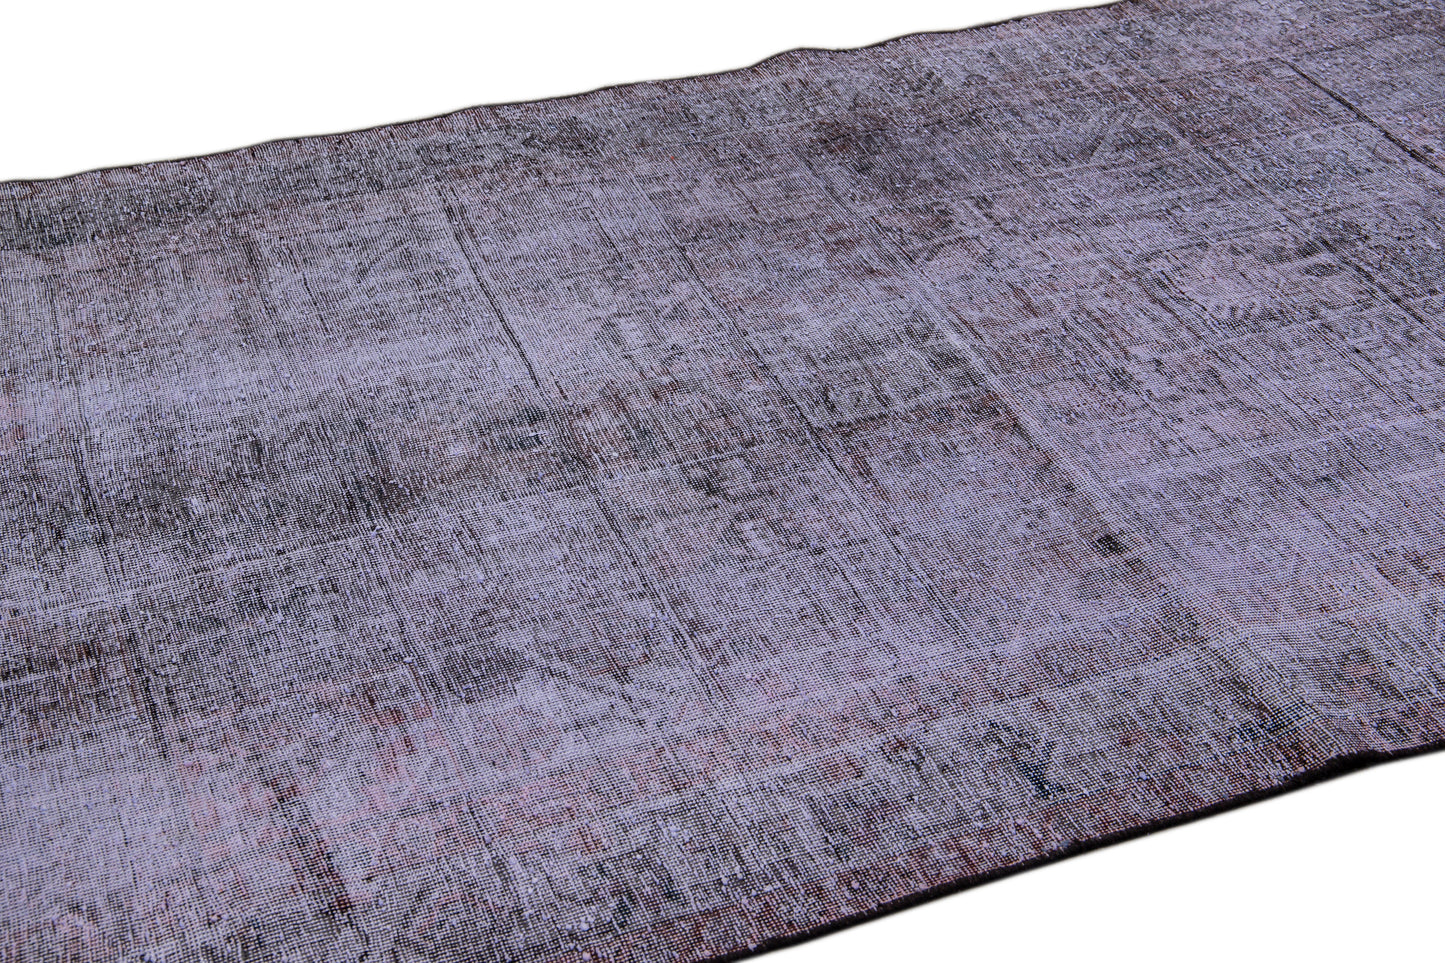 Vintage Persian Distressed Wool Rug - 5'2" x 8'10"